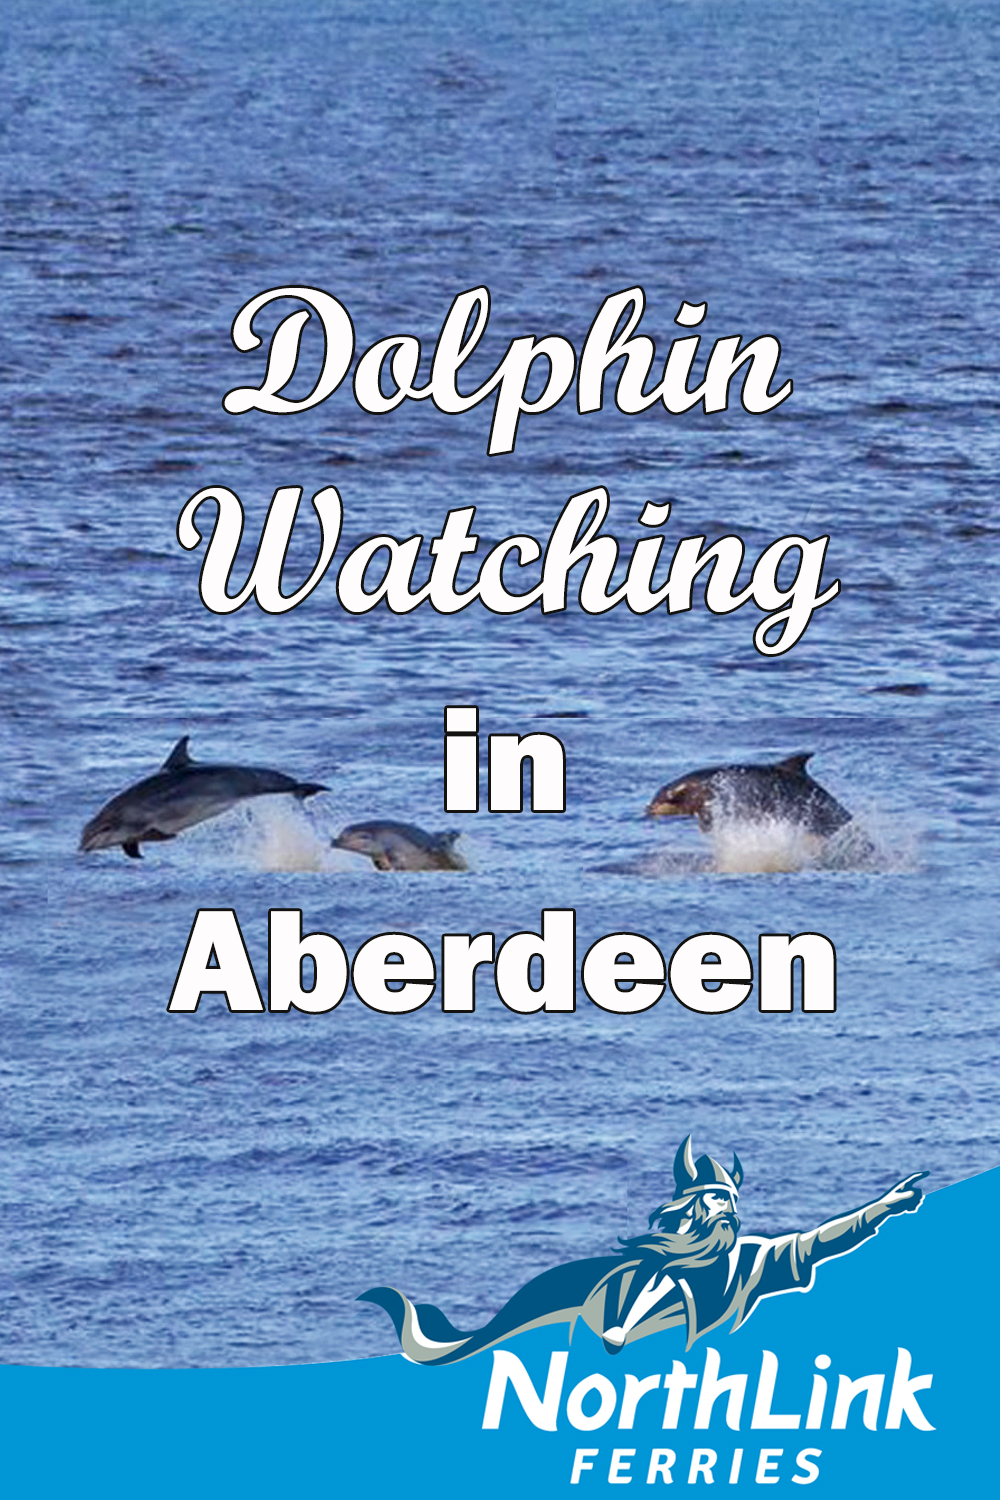 Dolphin watching in Aberdeen